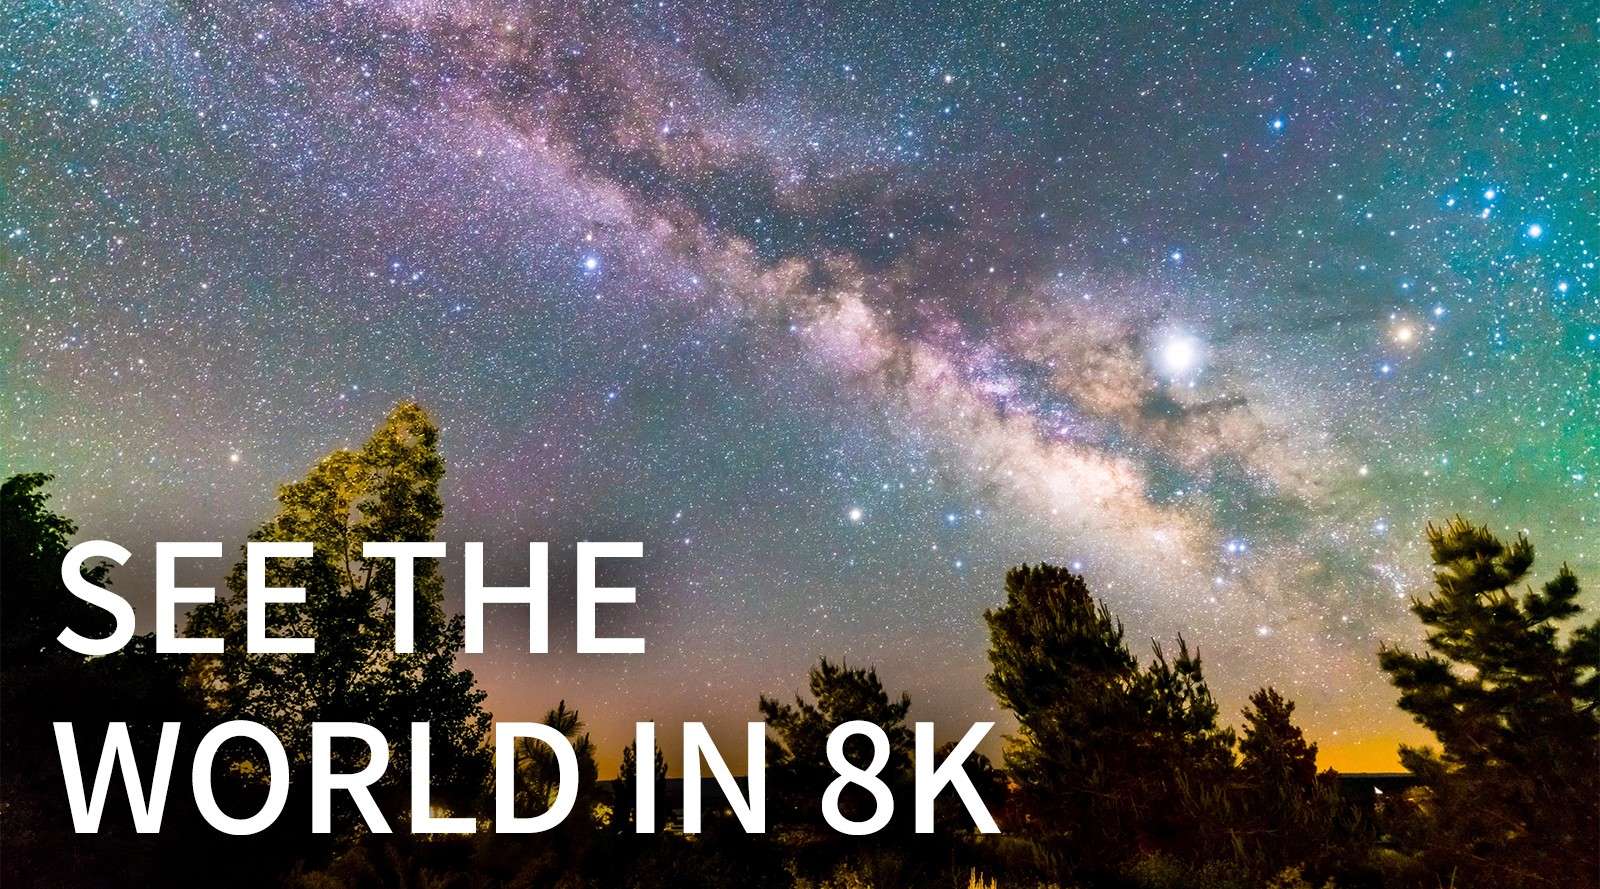 用 8K 看世界 | See the World in 8K